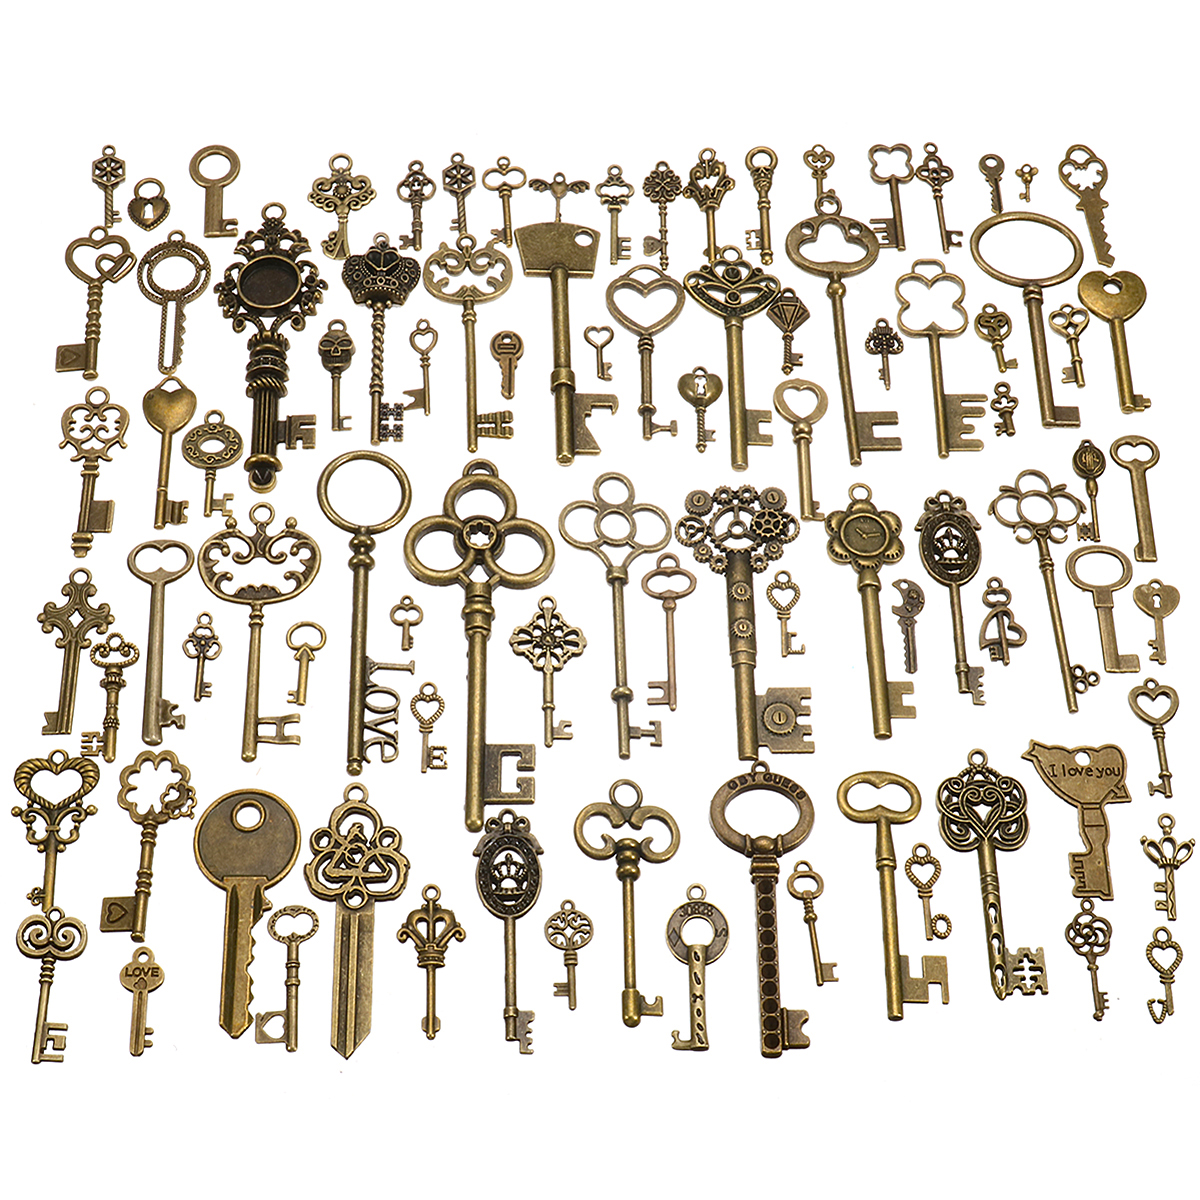 

90pcs Antique Vintage Old Ornate Skeleton Keys Lot Pendant Fancy Heart Decorations Gifts